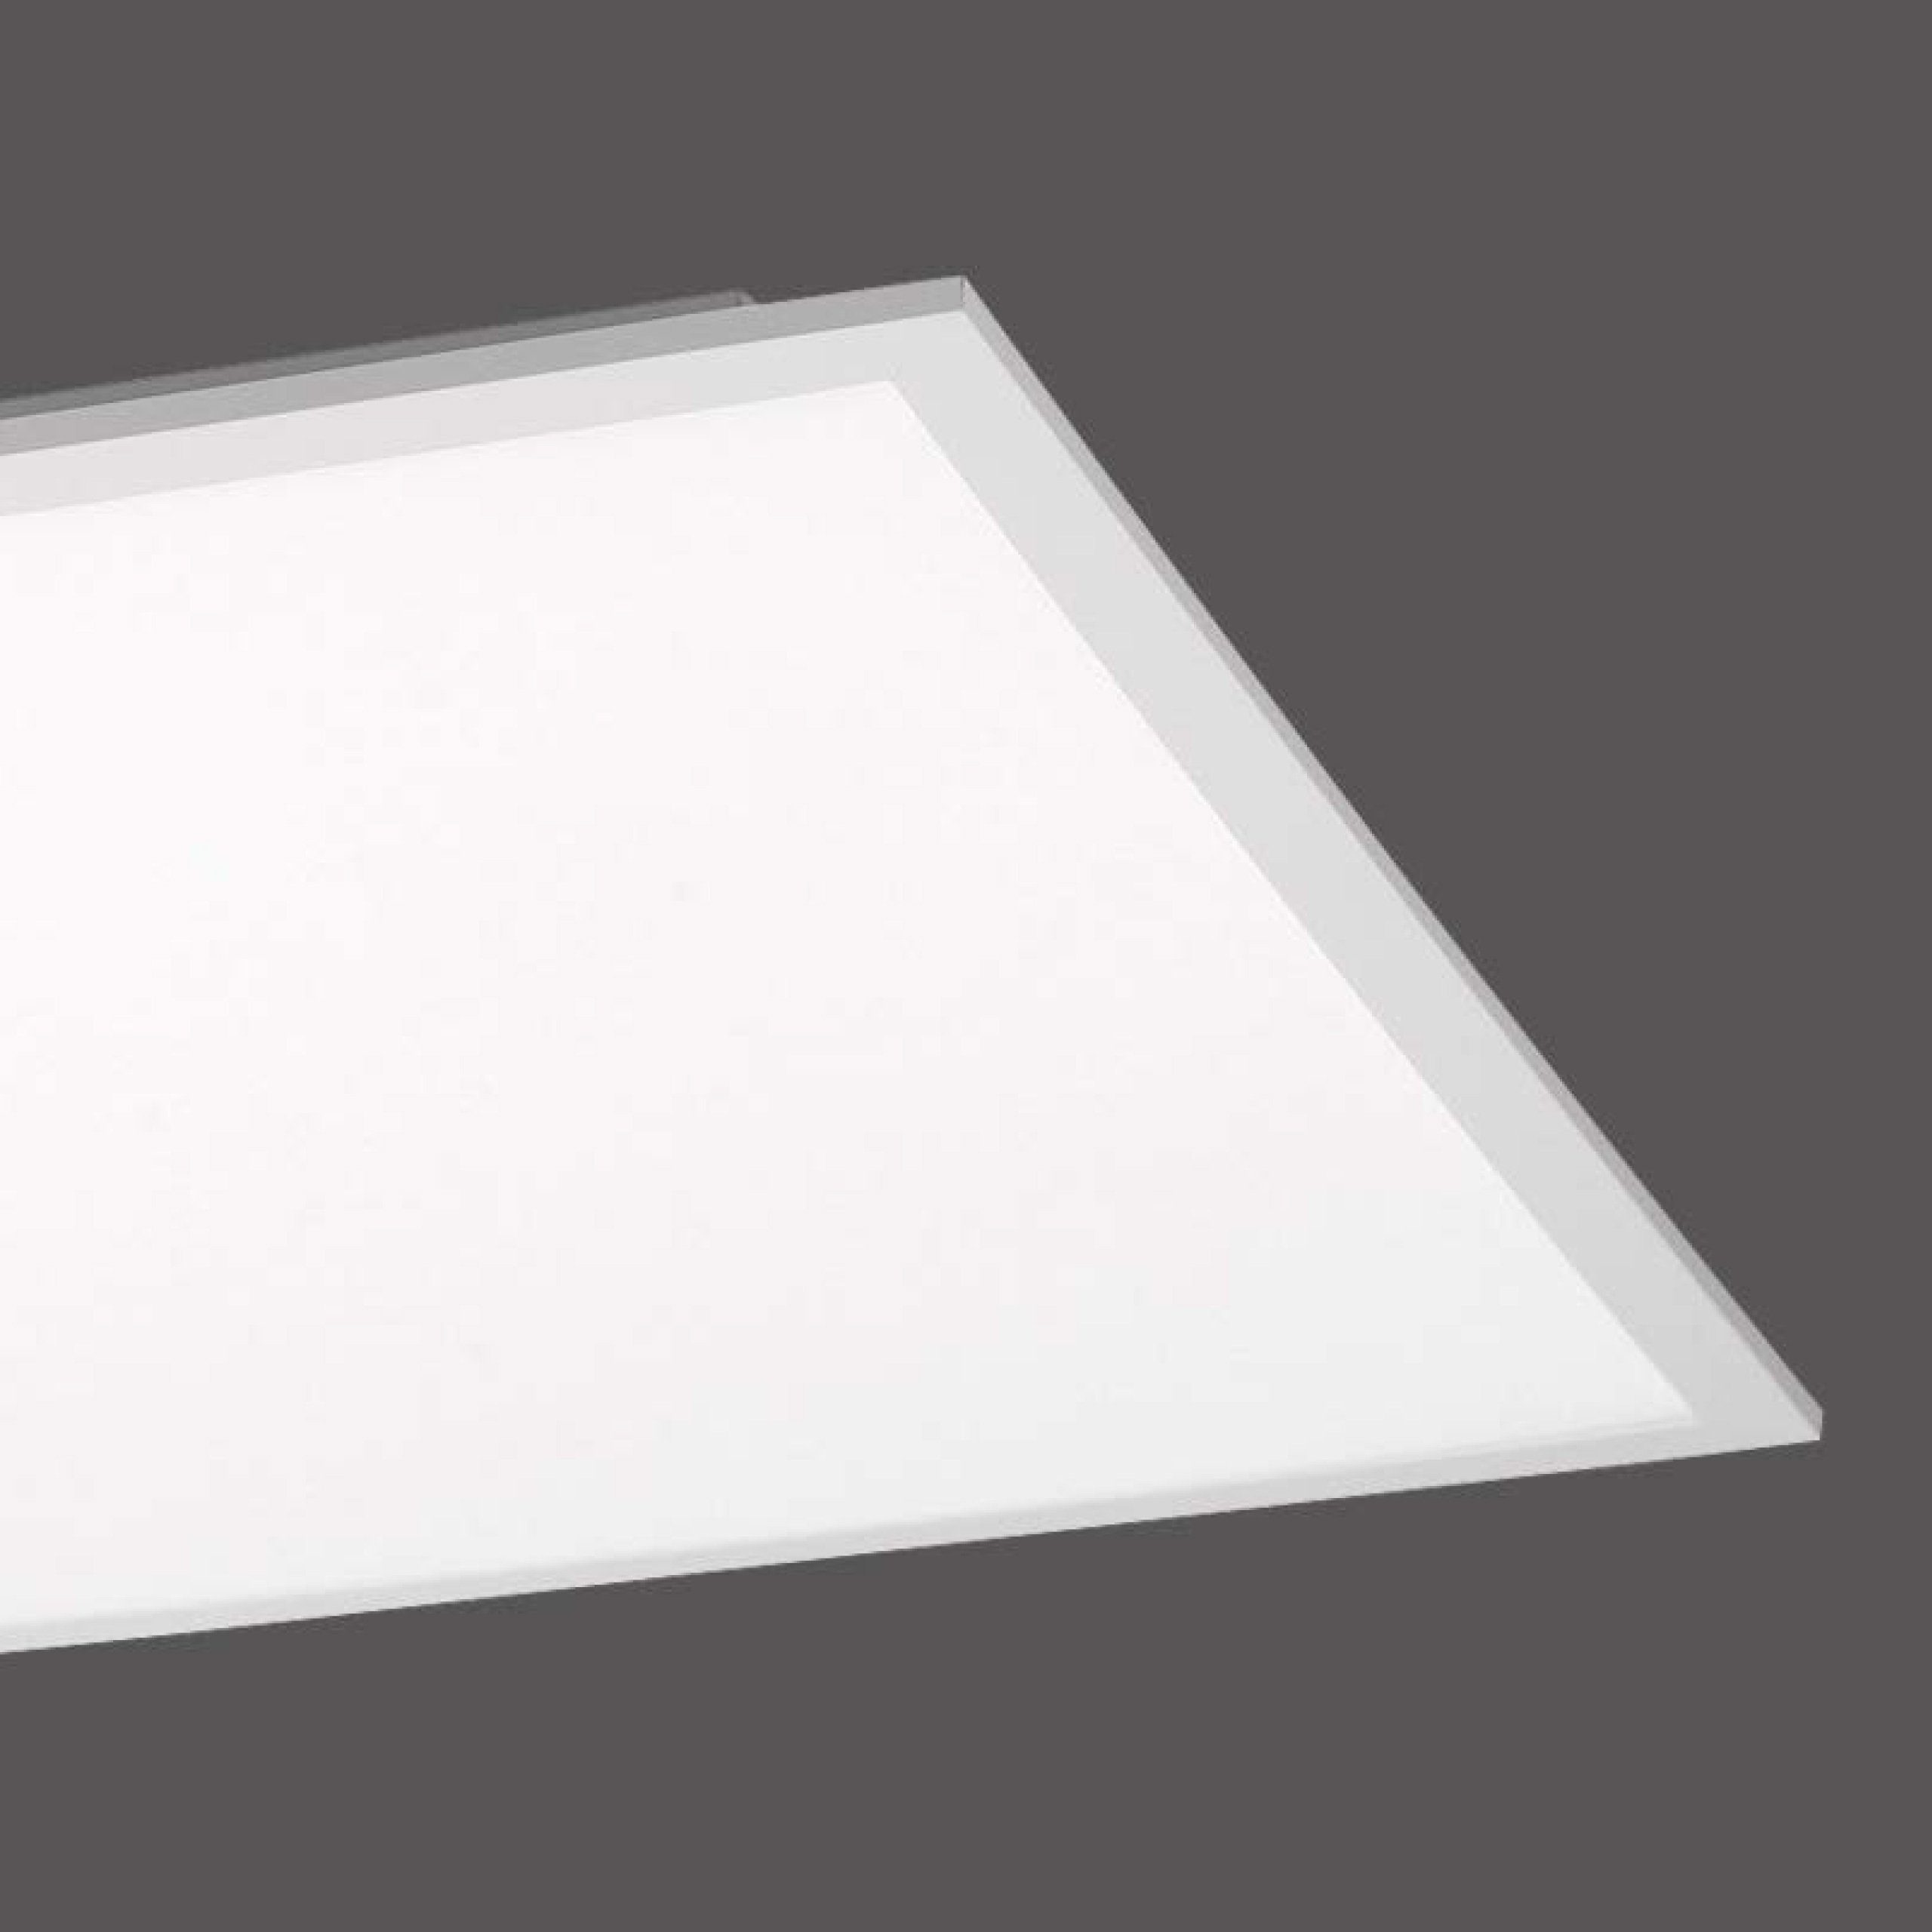 SellTec LED Deckenleuchte 45x45cm, / Deckenlampe 23 Neutralweiß, 1xLED-Board tageslichtweiß, Lichtfarbe Panel Watt, neutralweiß, Büro quadratisch, tageslichtweiß LED